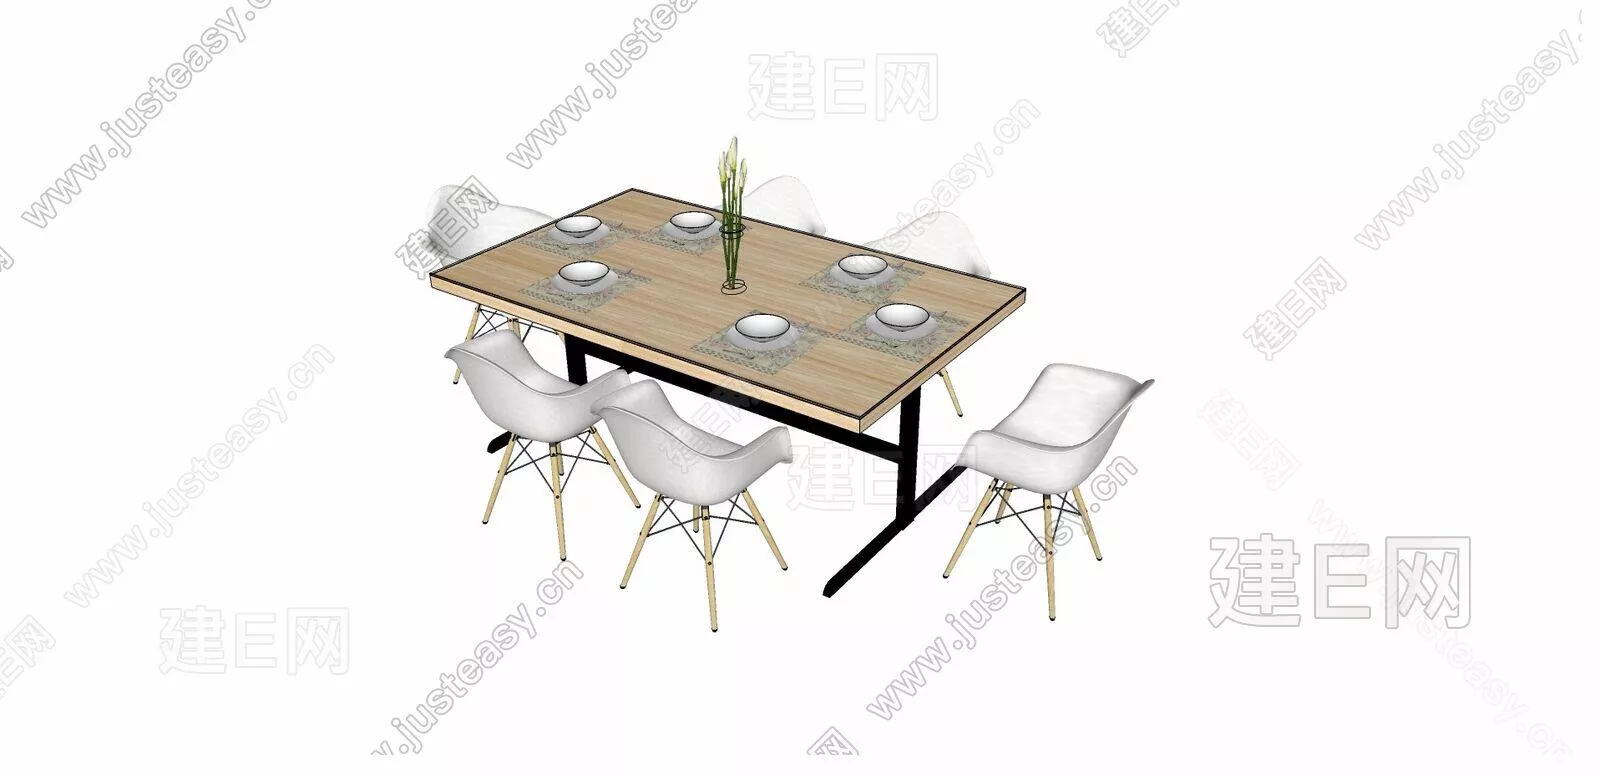 MODERN DINING TABLE SET - SKETCHUP 3D MODEL - ENSCAPE - 105726306